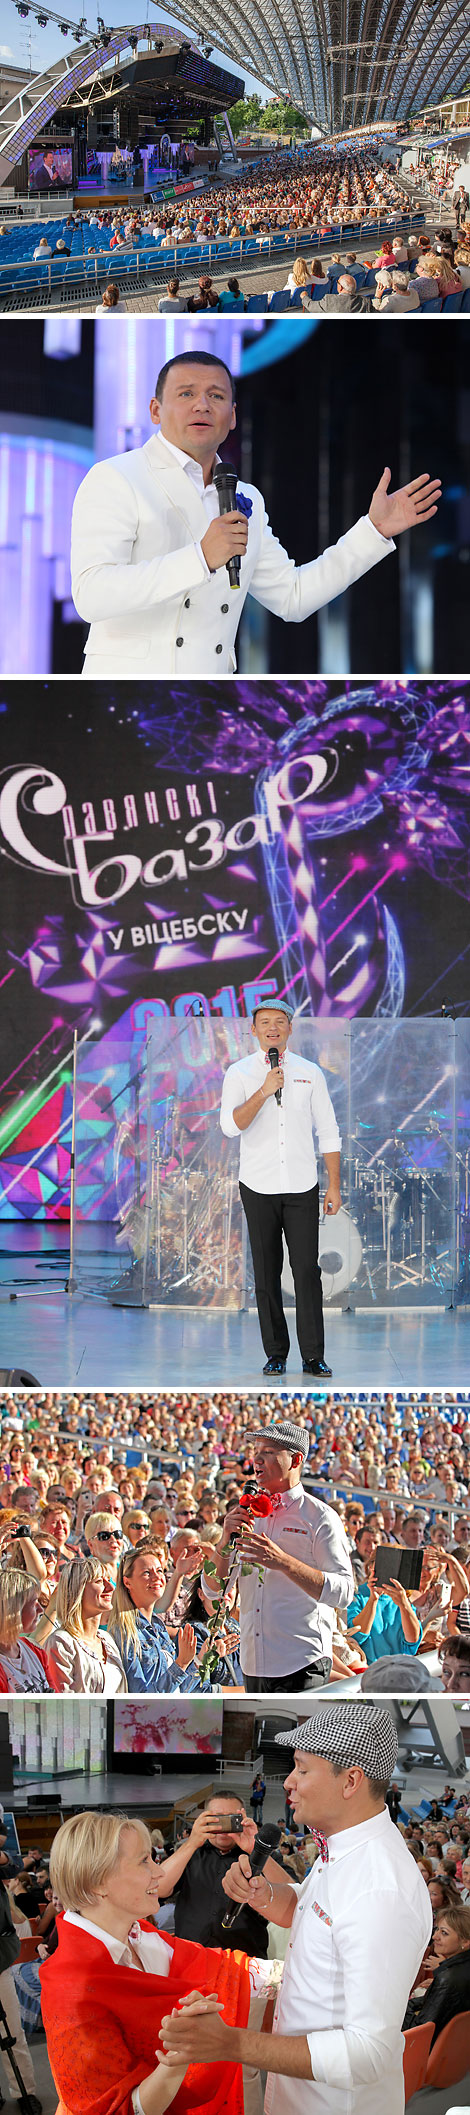 Alexander Oleshko's show in Vitebsk